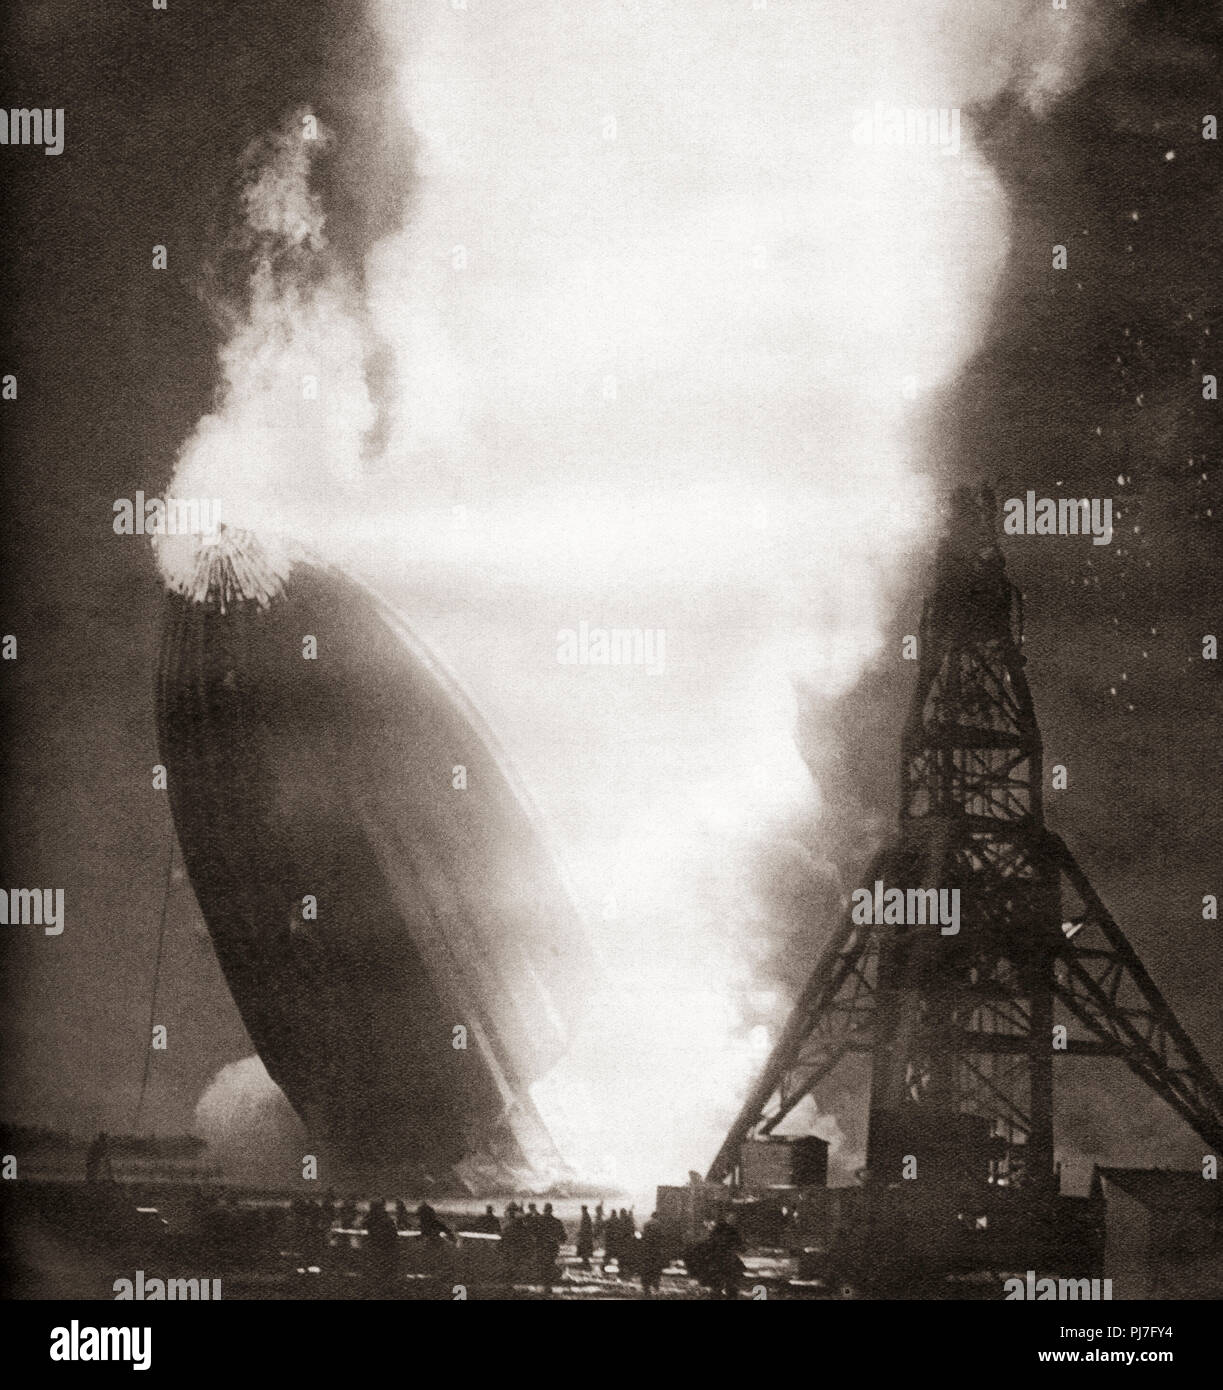 Die Hindenburg disaster, 6. Mai 1937. Die deutsche Passagier Luftschiff LZ 129 Hindenburg fing Feuer und wurde zerstört, während versuchend, Dock mit seinen Liegeplatz Mast auf der Naval Air Station Lakehurst, Manchester Township, New Jersey, Vereinigte Staaten von Amerika. Von diesen enormen Jahre, veröffentlicht 1938. Stockfoto